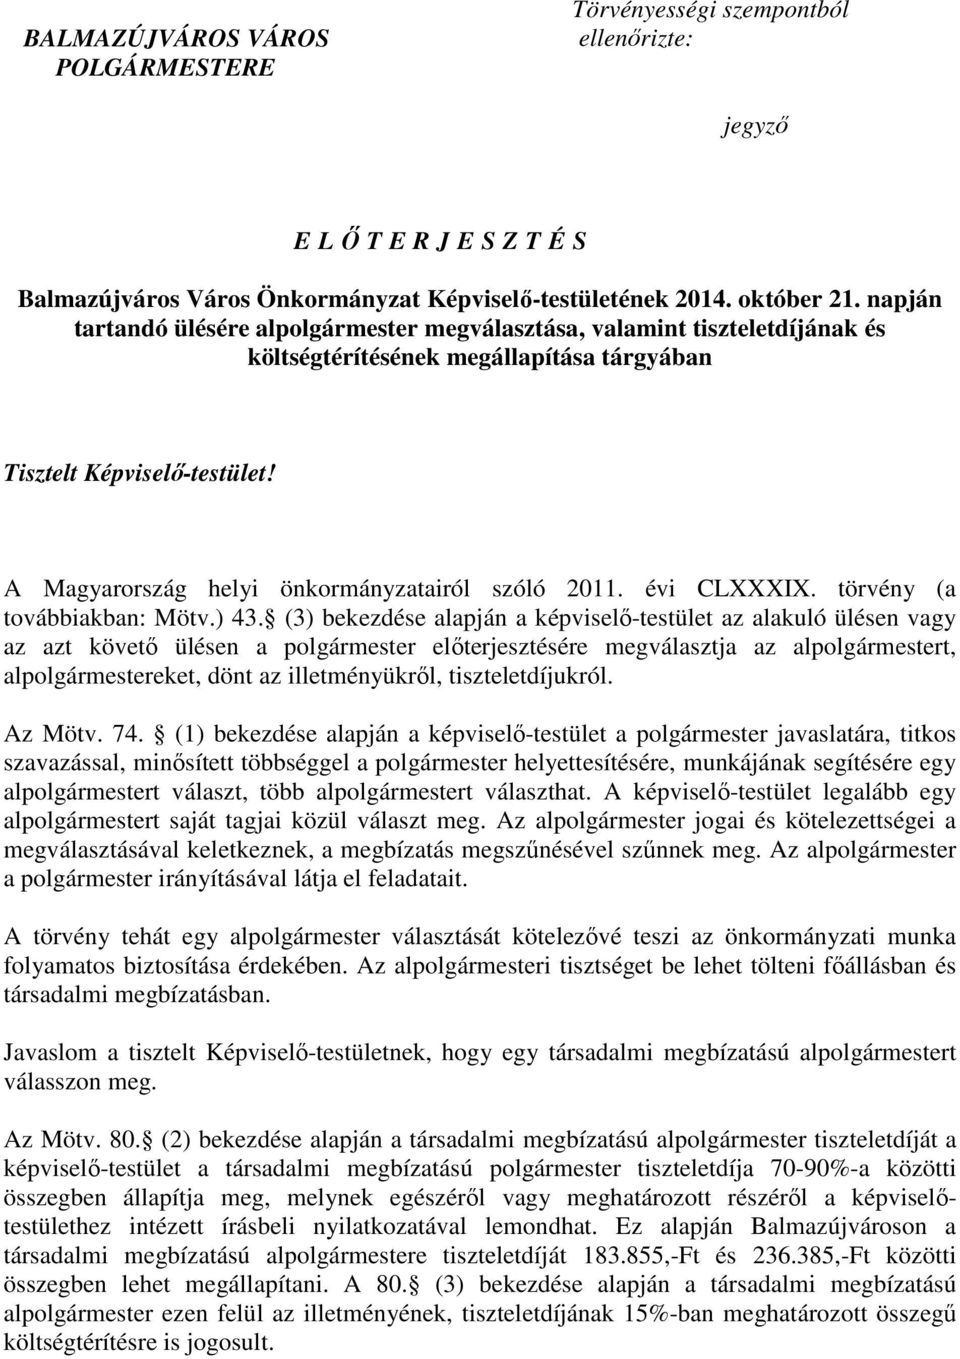 A Magyarország helyi önkormányzatairól szóló 2011. évi CLXXXIX. törvény (a továbbiakban: Mötv.) 43.